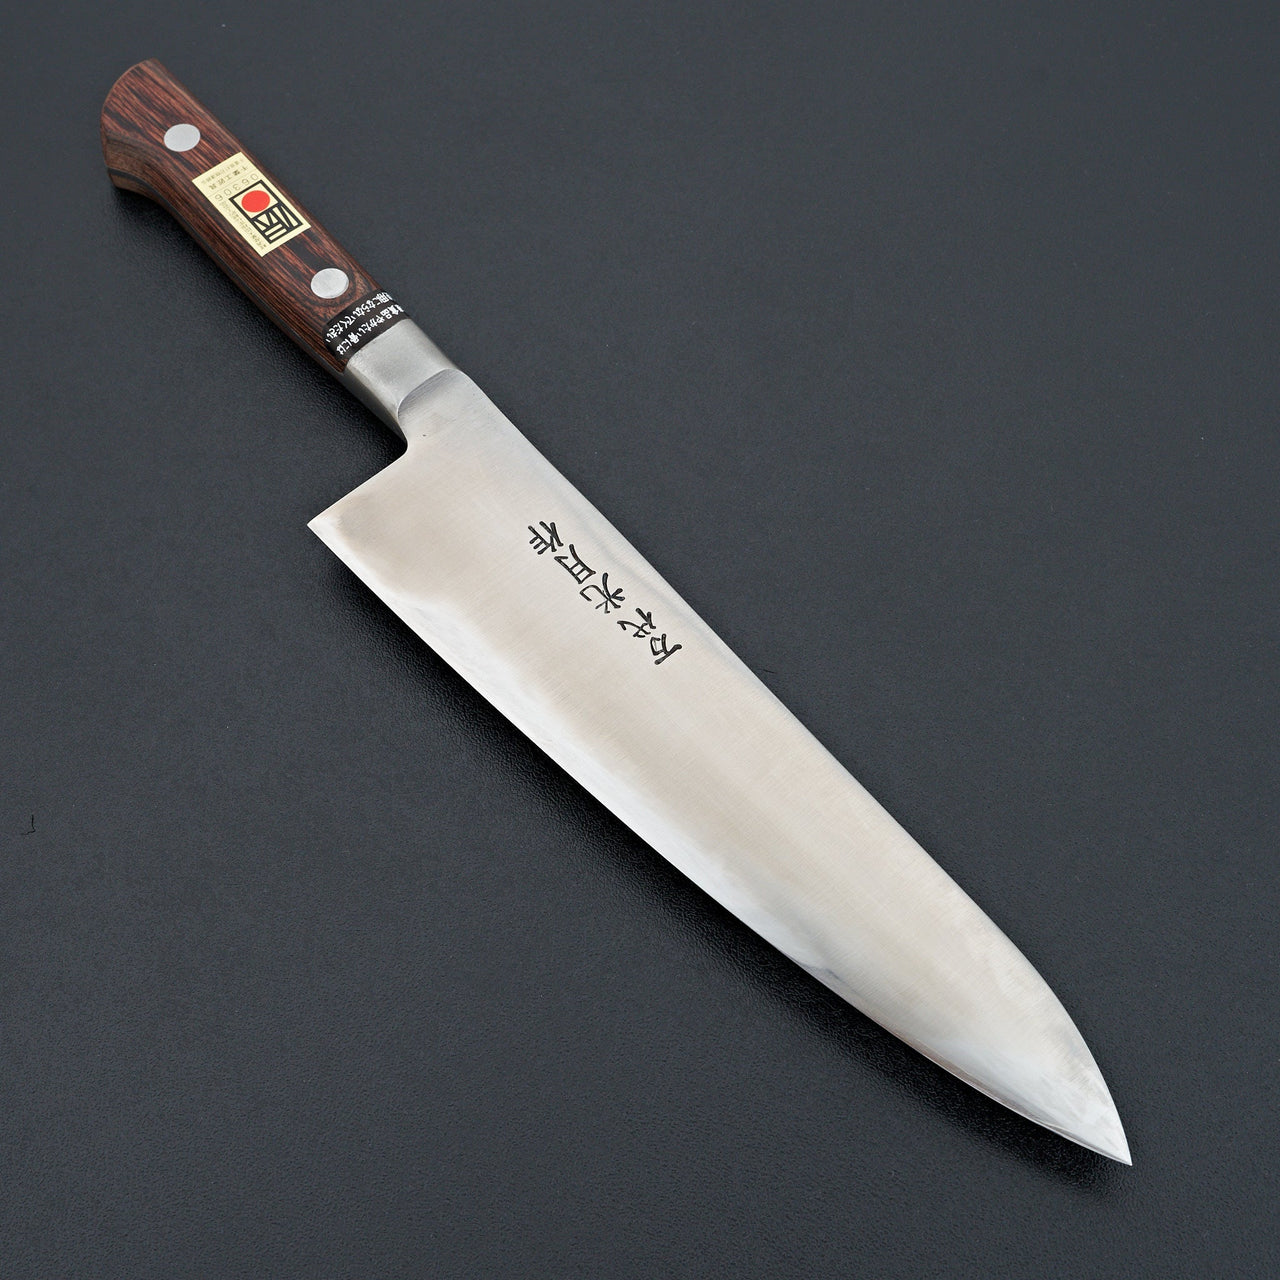 Kogetsu Mandai Stainless Gyuto 210mm Imitation Mahogany Handle-Knife-Kogetsu-Carbon Knife Co